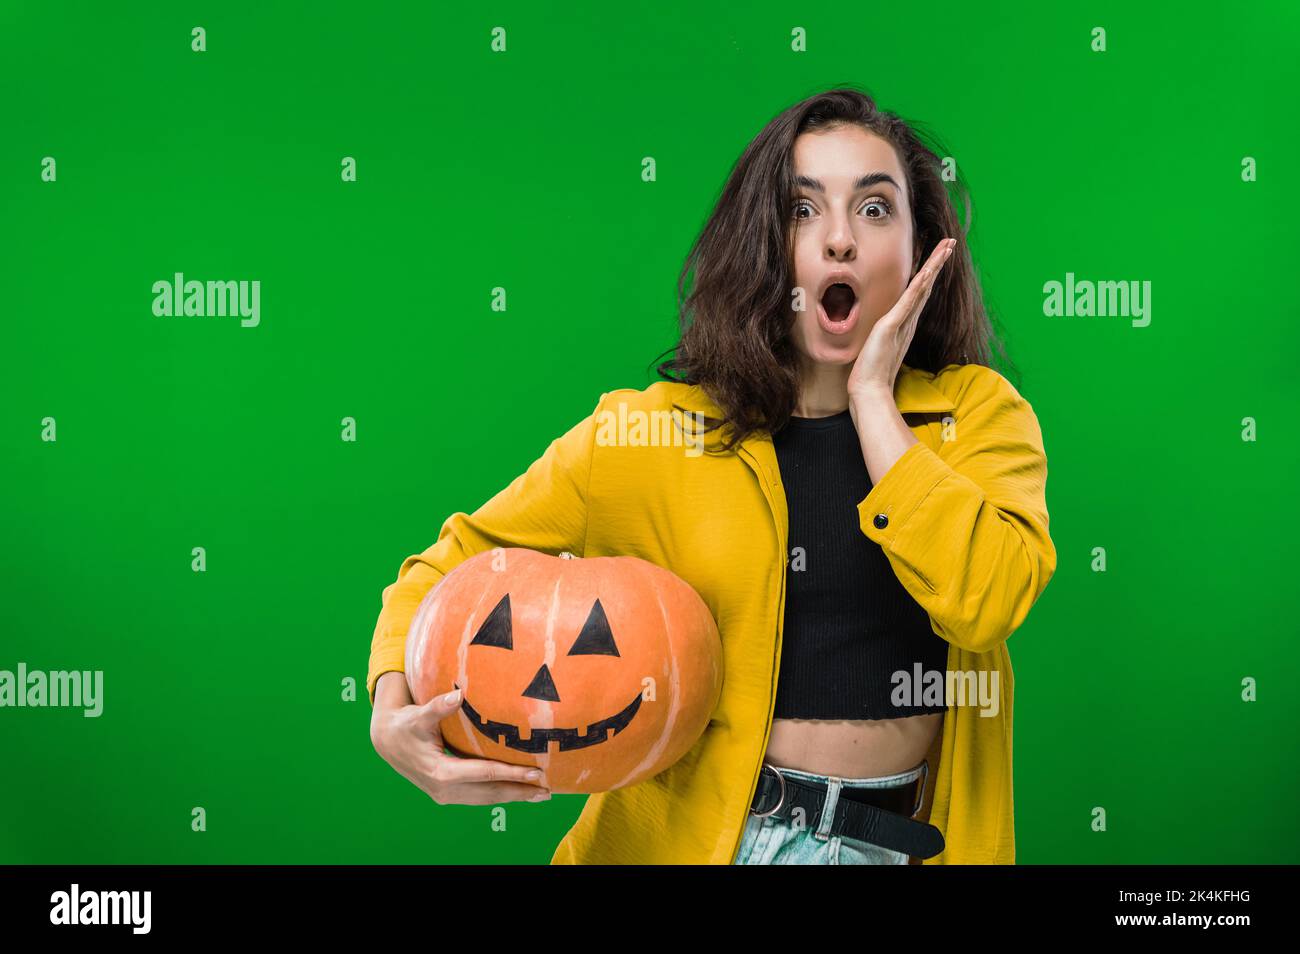 Erschrocken aufgeregt schockierte kaukasische Frau in legerer Kleidung, hält gemalten halloween-Kürbis, steht auf isoliertem grünen Hintergrund, Blick auf die Kamera in Staunen. Halloween-Party, Albtraum-Konzept Stockfoto